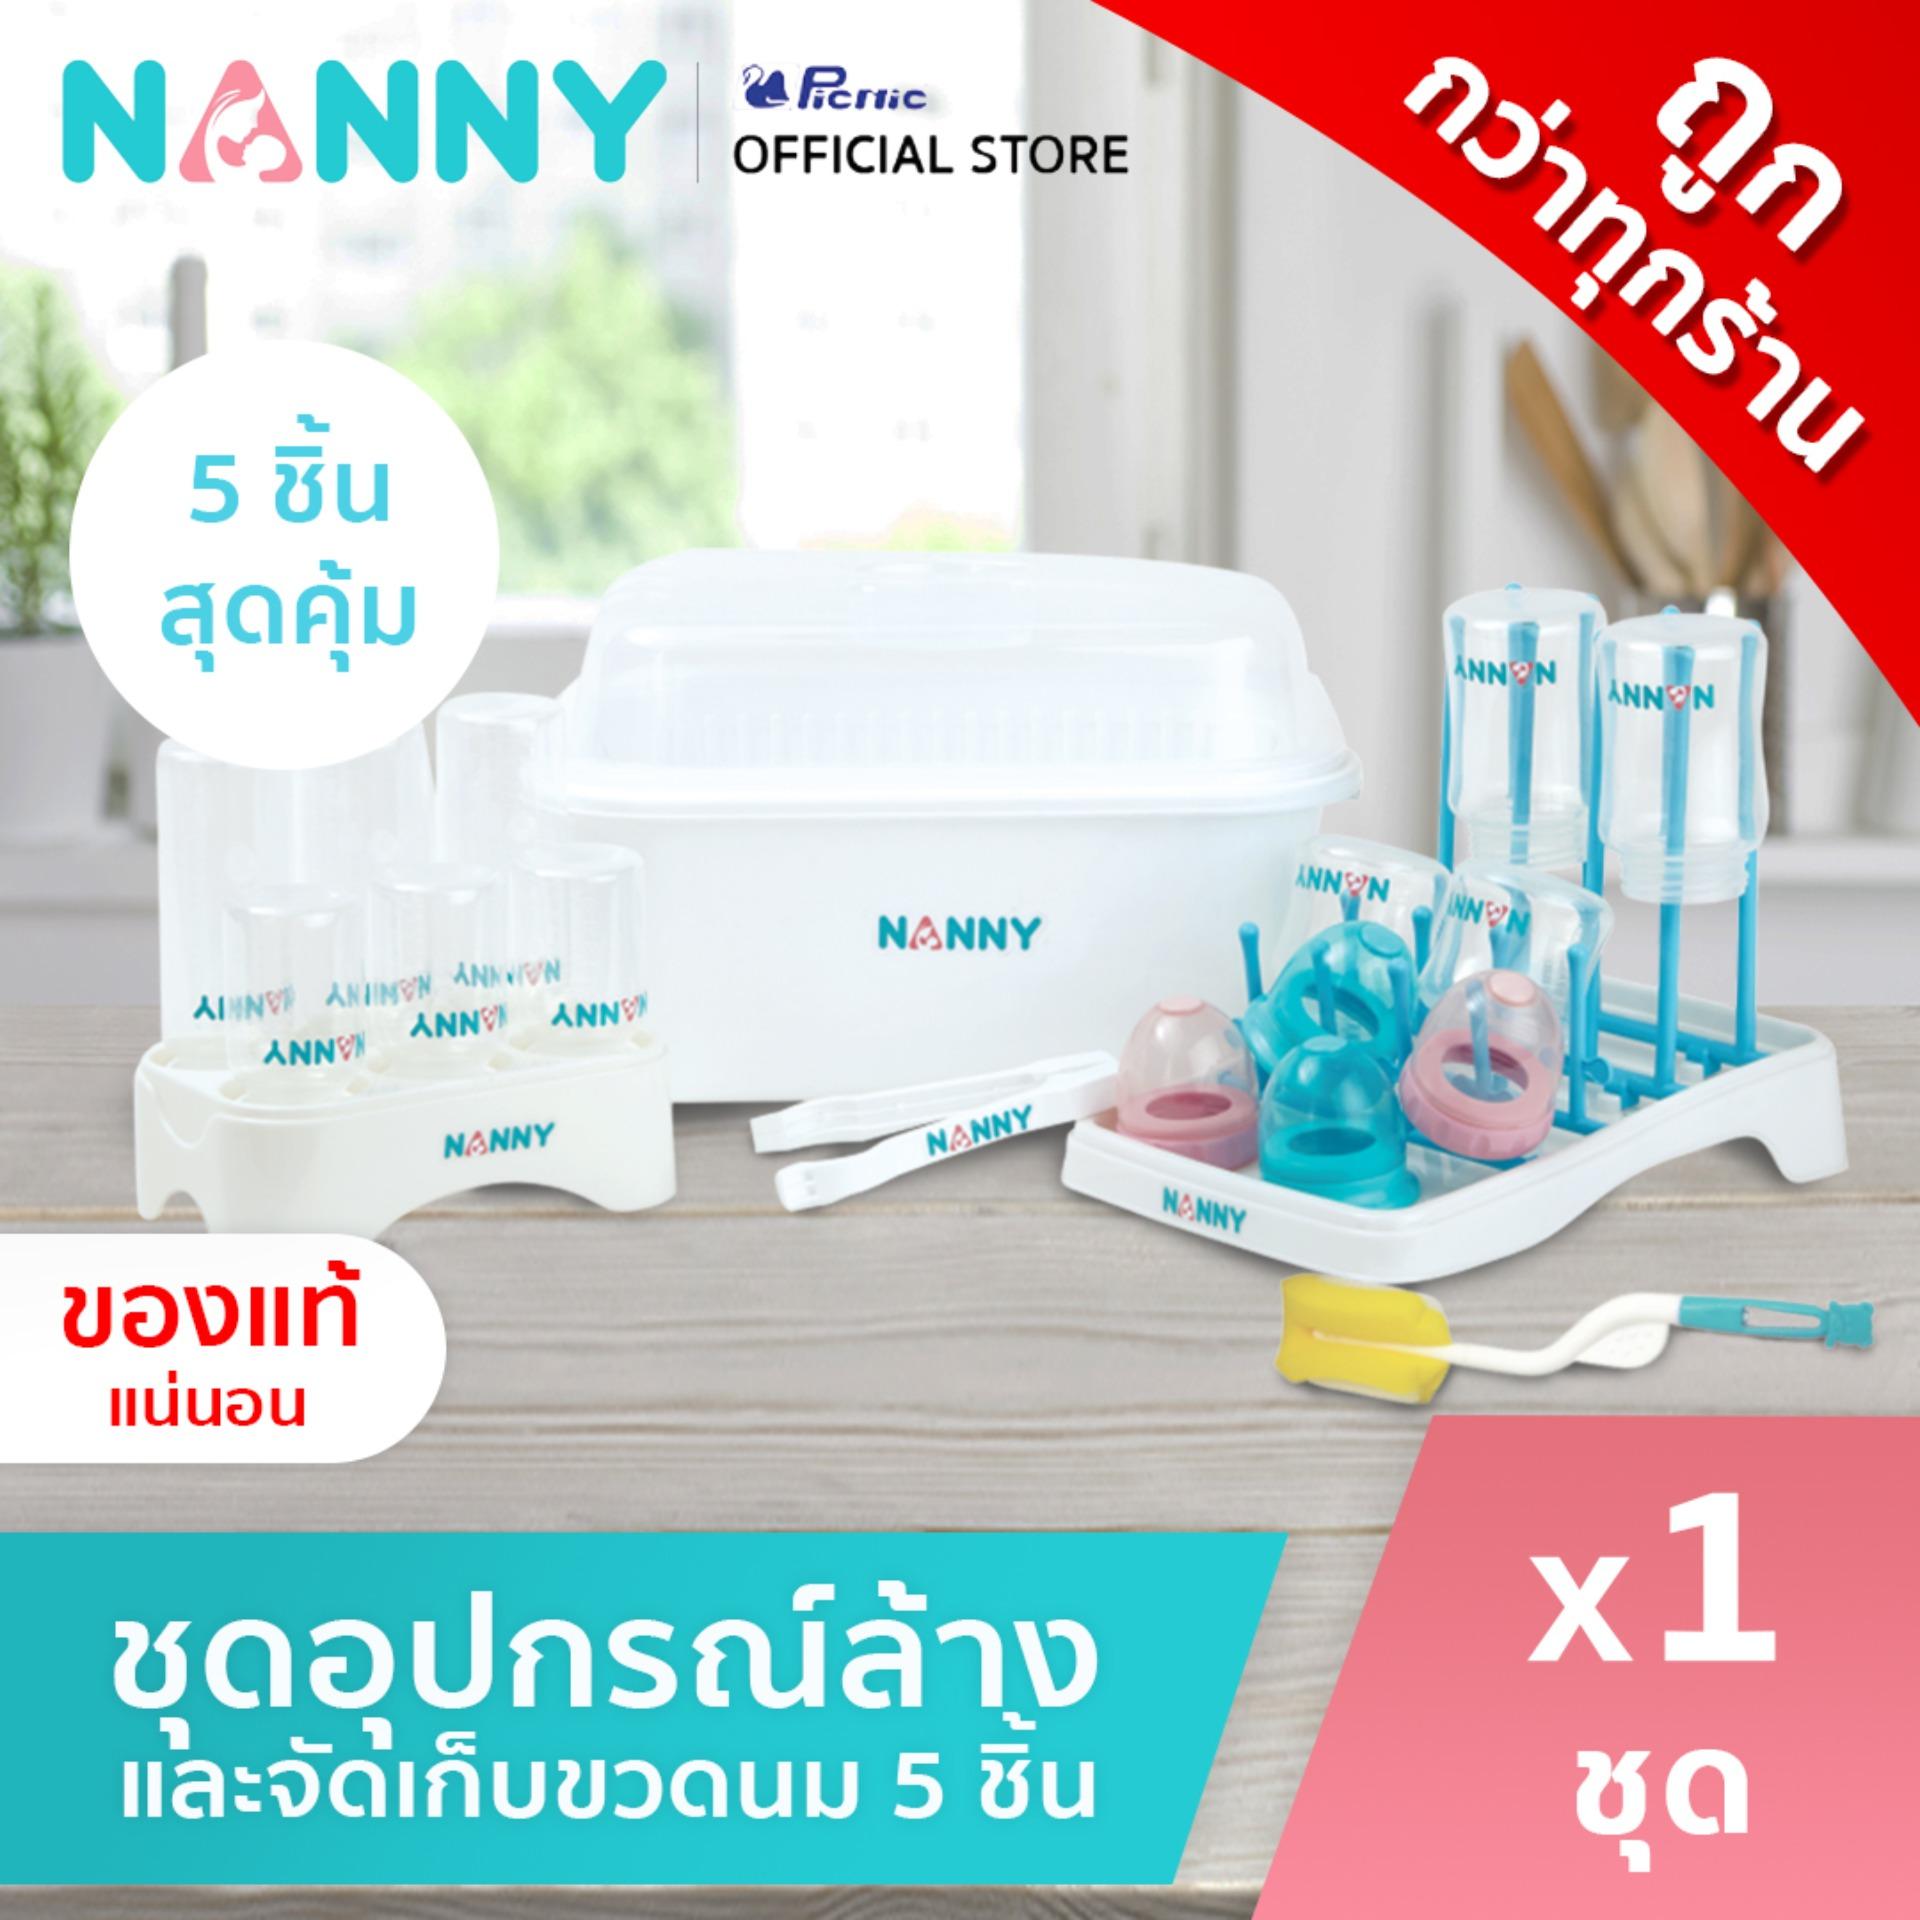 โปรโมชั่น NANNY - ชุดอุปกรณ์ล้างและจัดเก็บขวดนม ทั้งหมด 5 ชิ้น จะล้าง จะตาก จะเก็บ ขวดนม ครบในเซ็ตเดียว คุ้มสุดๆ S5-N216